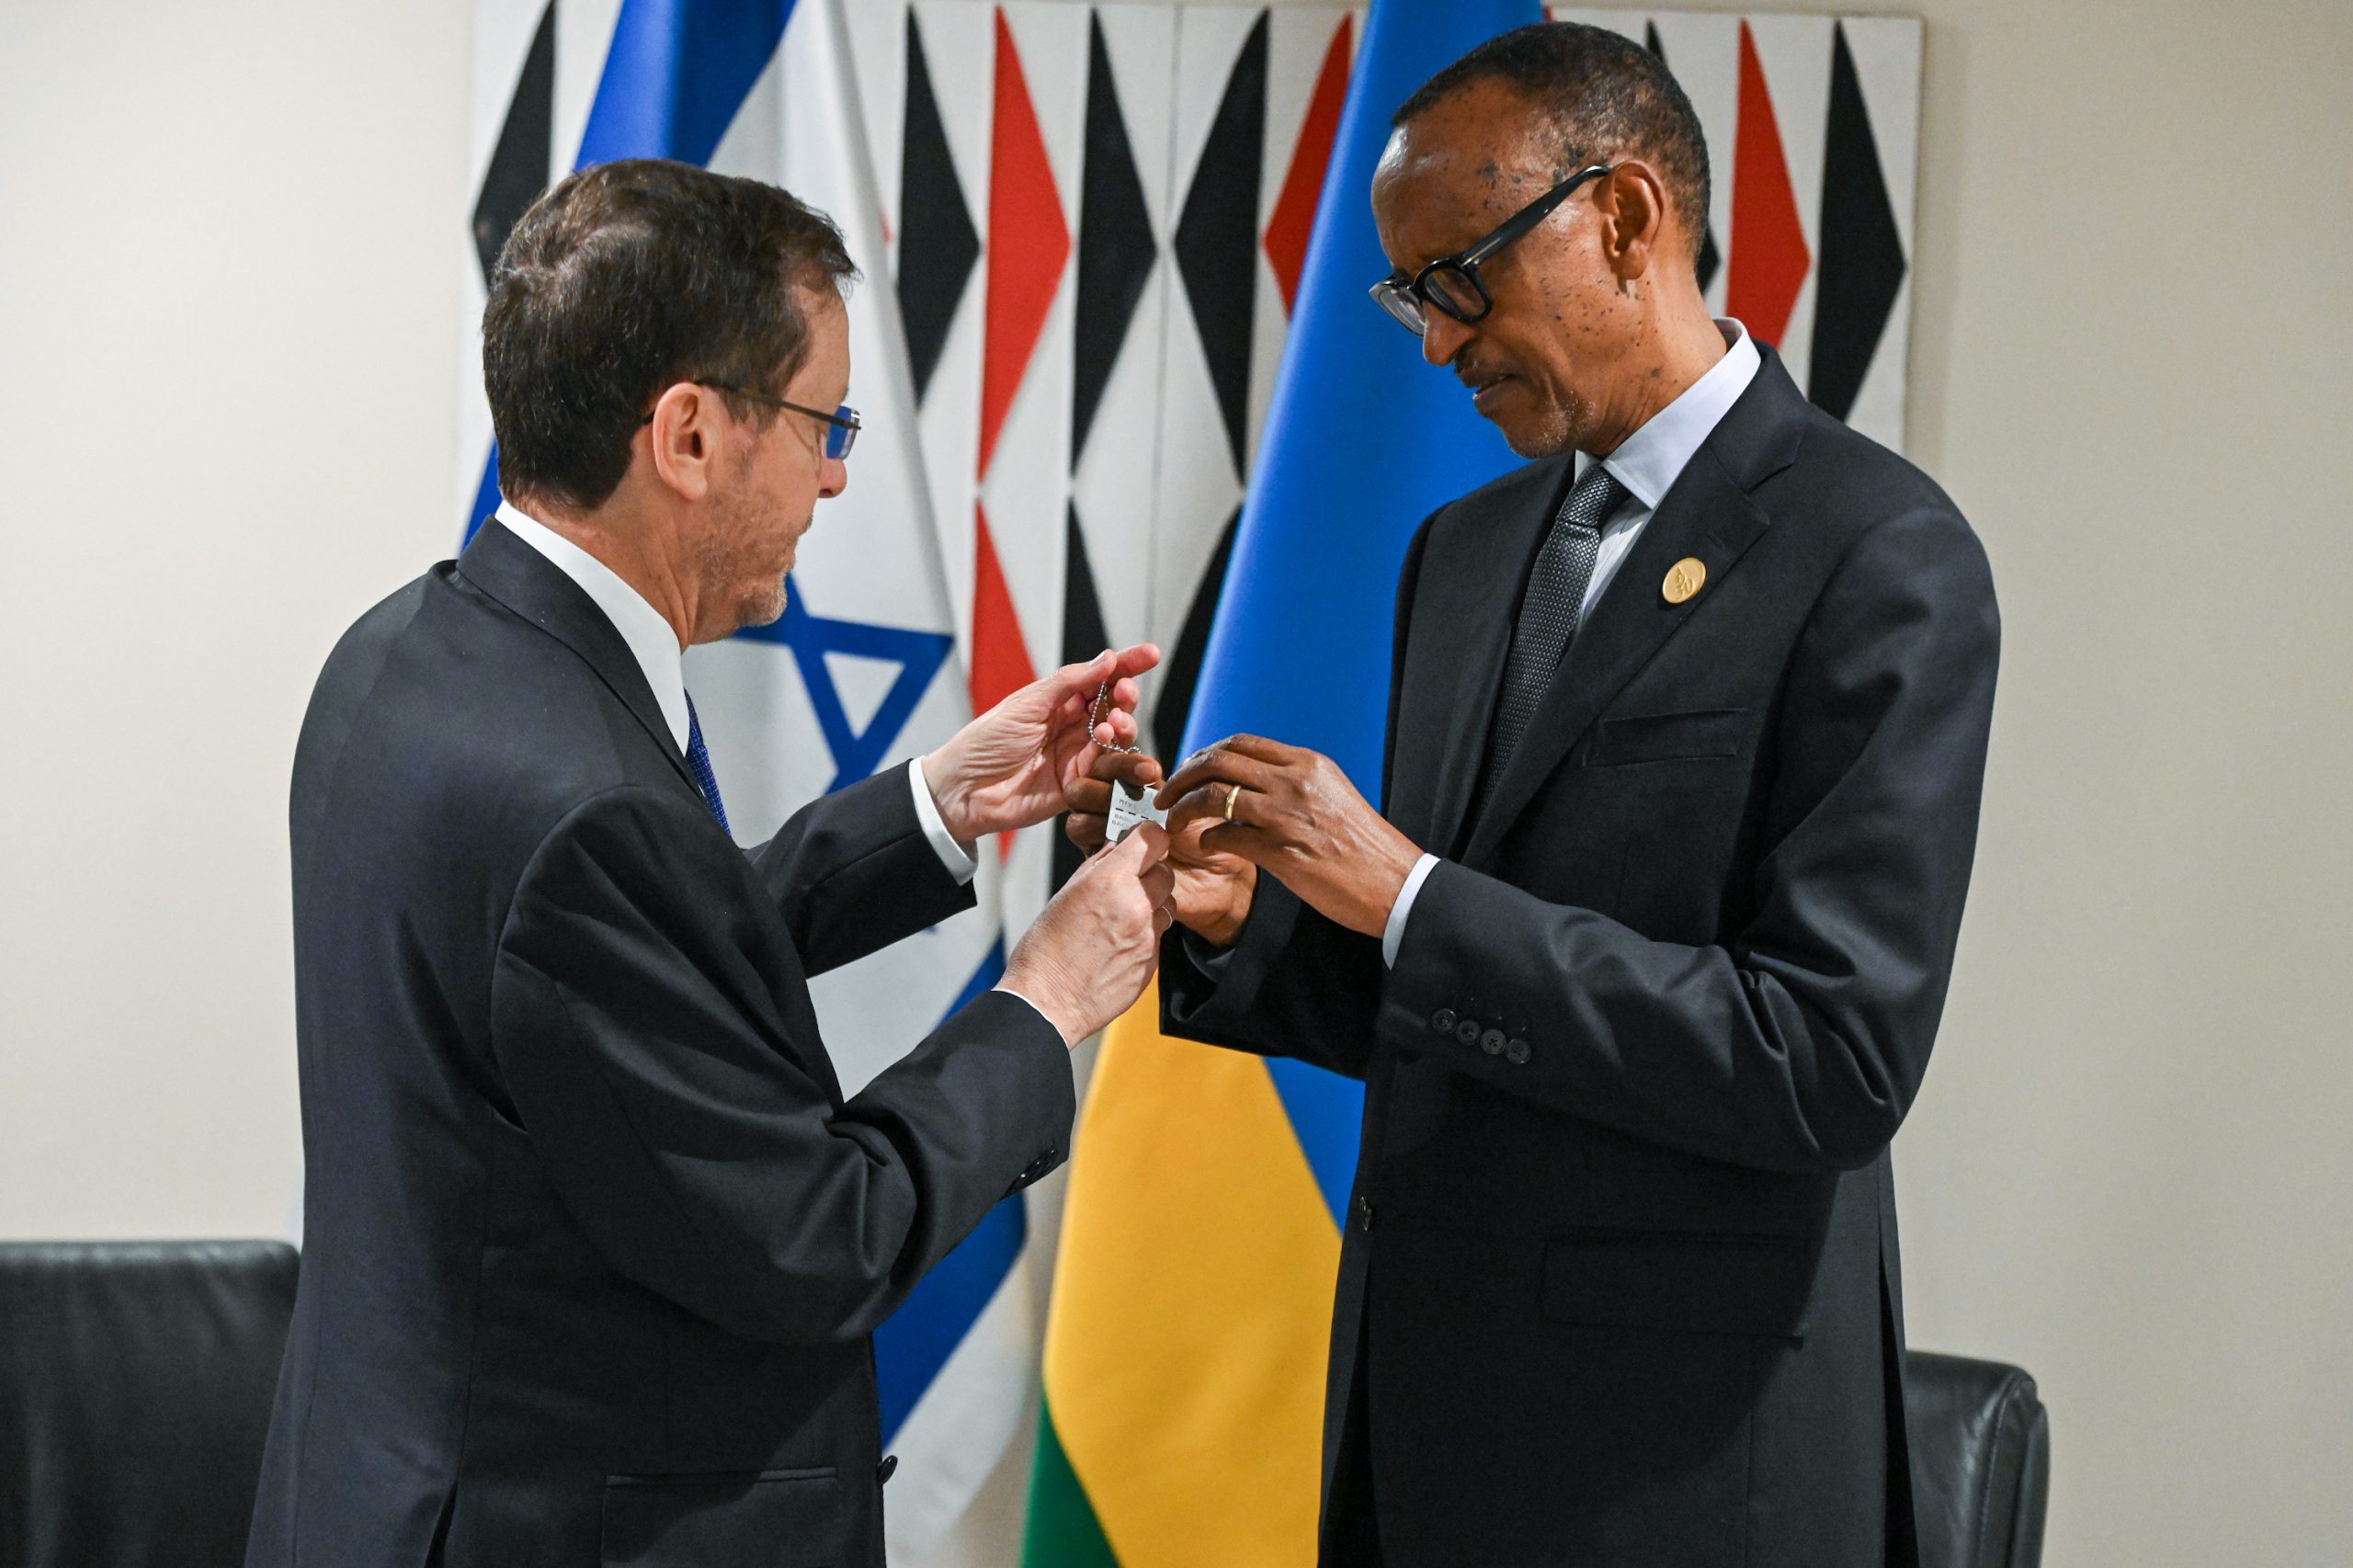 נשיא המדינה נפגש עם נשיא רואנדה והעניק לו את דיסקית החטופים בקריאה לשחרורם המיידי